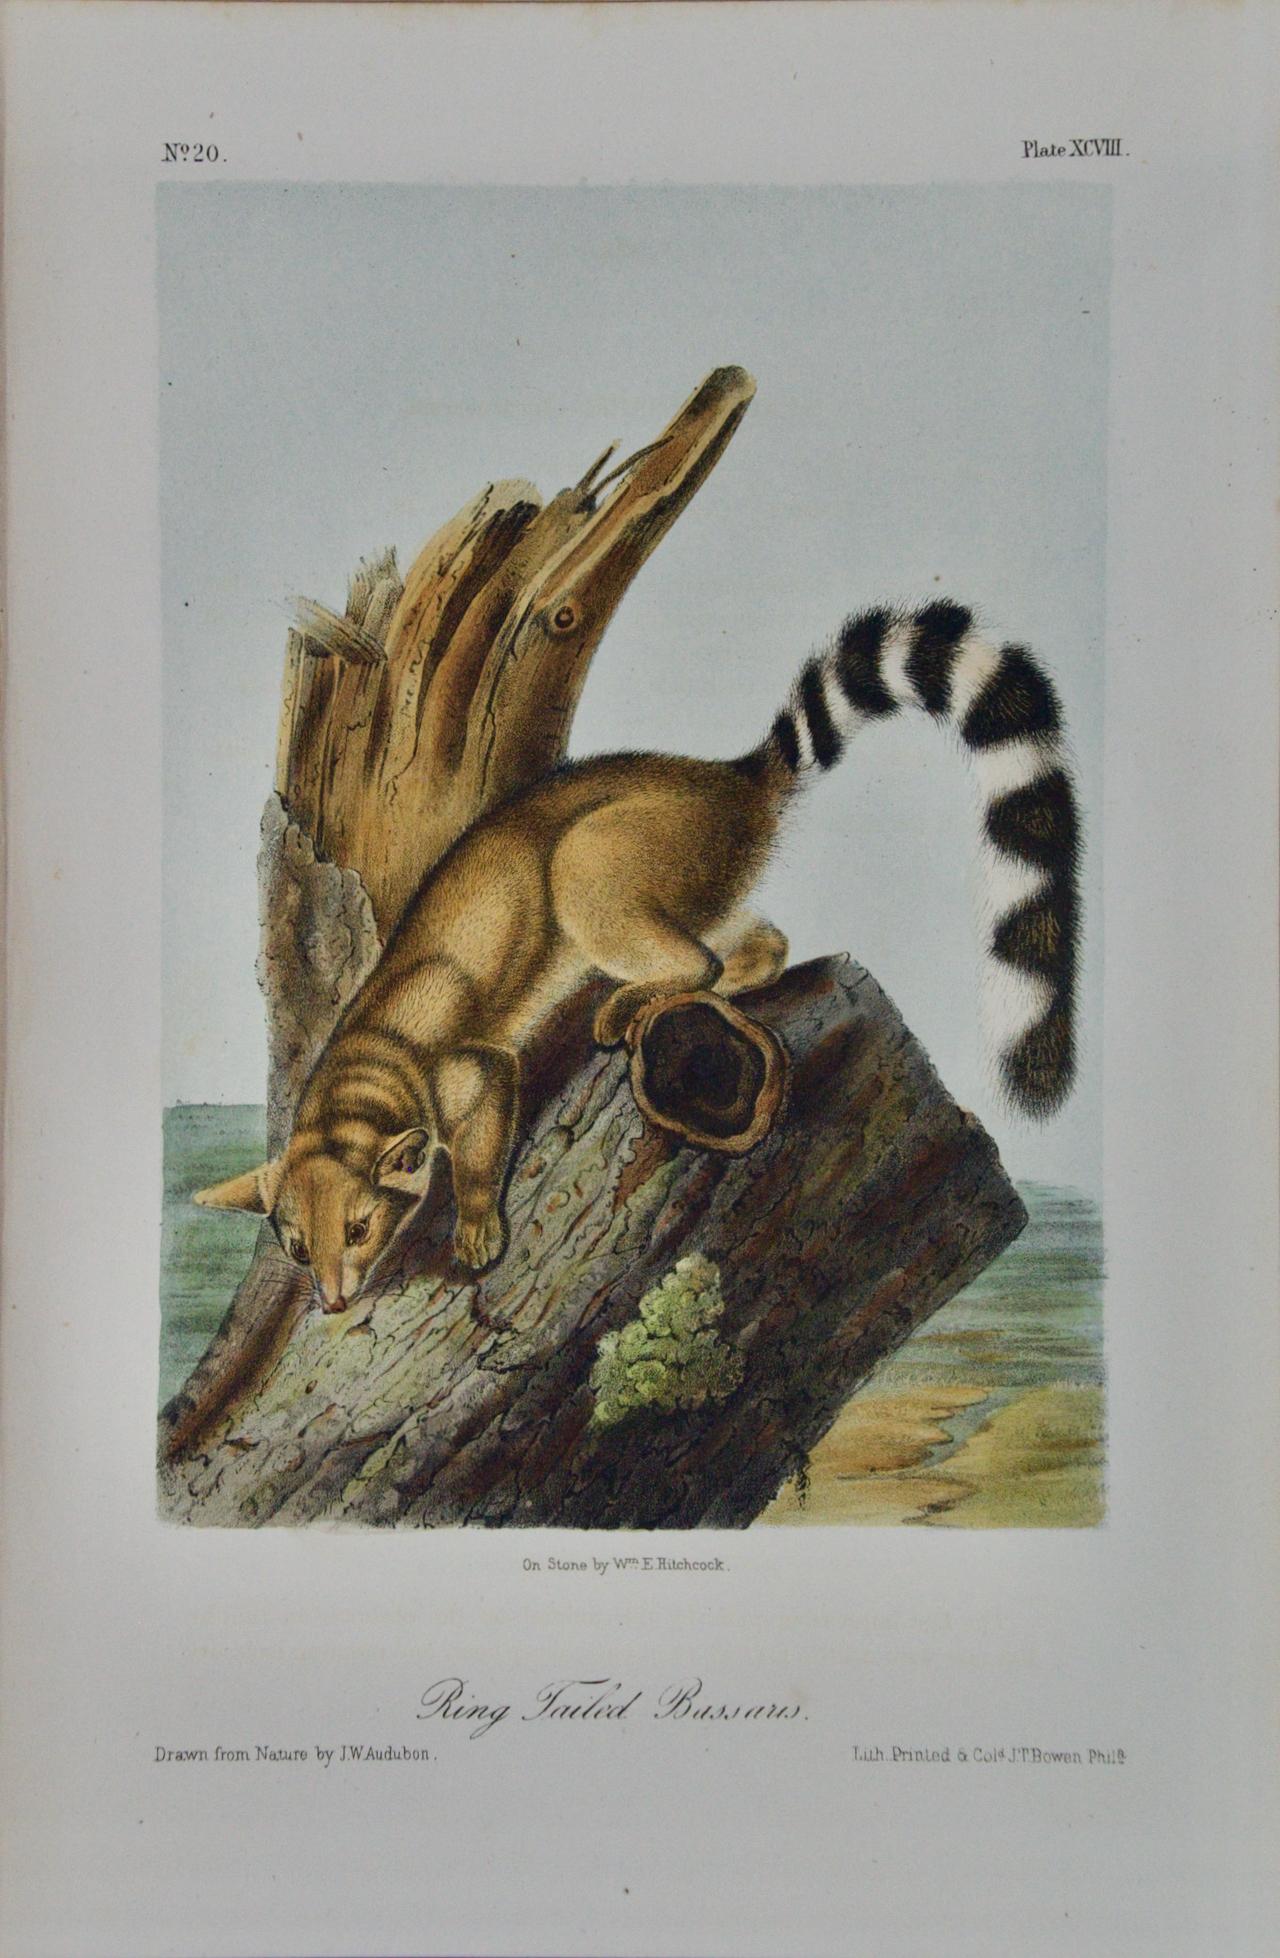 John James Audubon Animal Print - Ring-Tailed Bassaris: An Original Audubon Hand-colored Lithograph